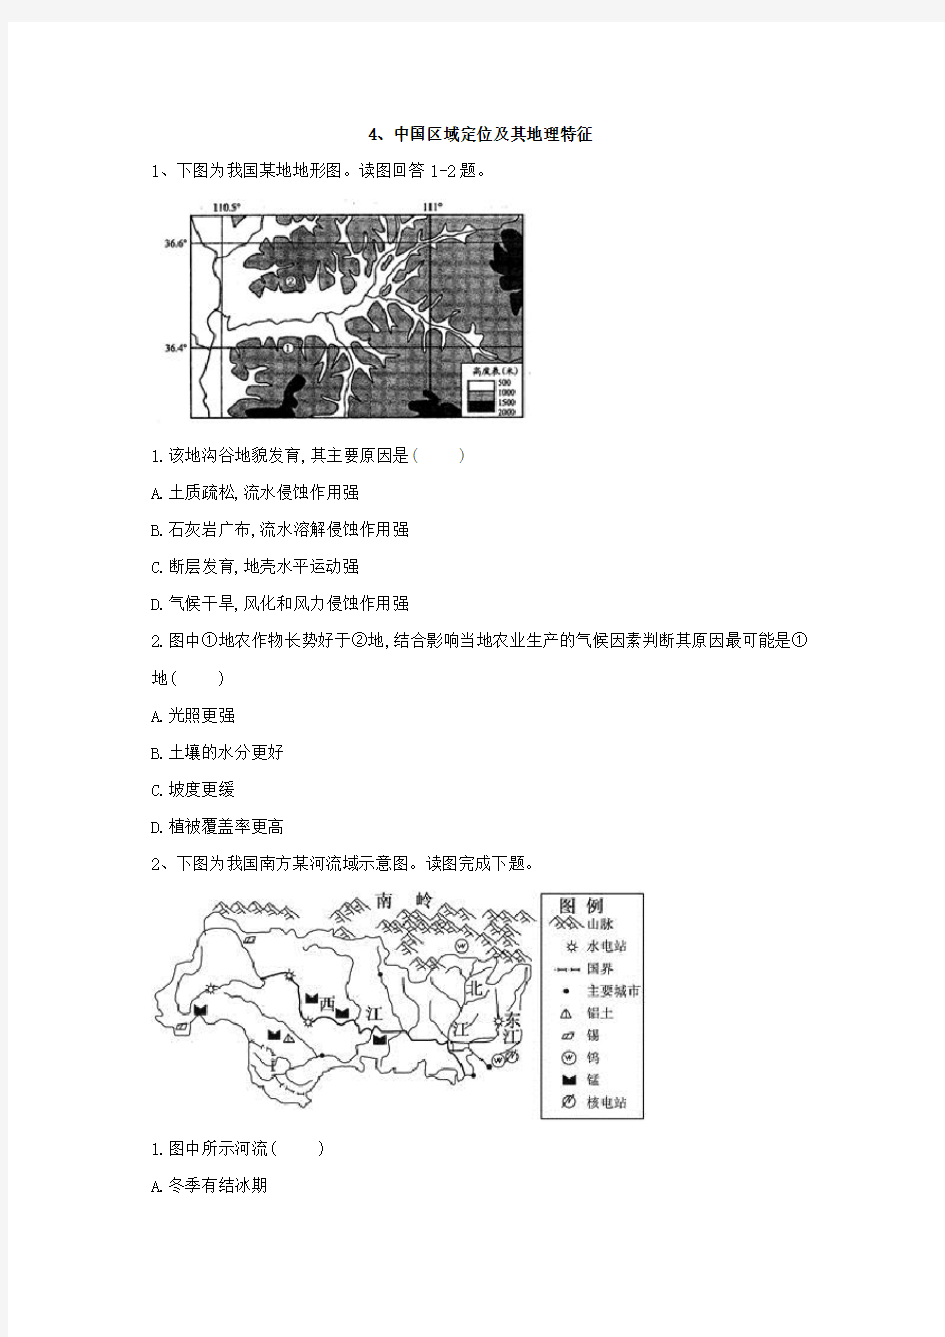 4、中国区域定位及其地理特征